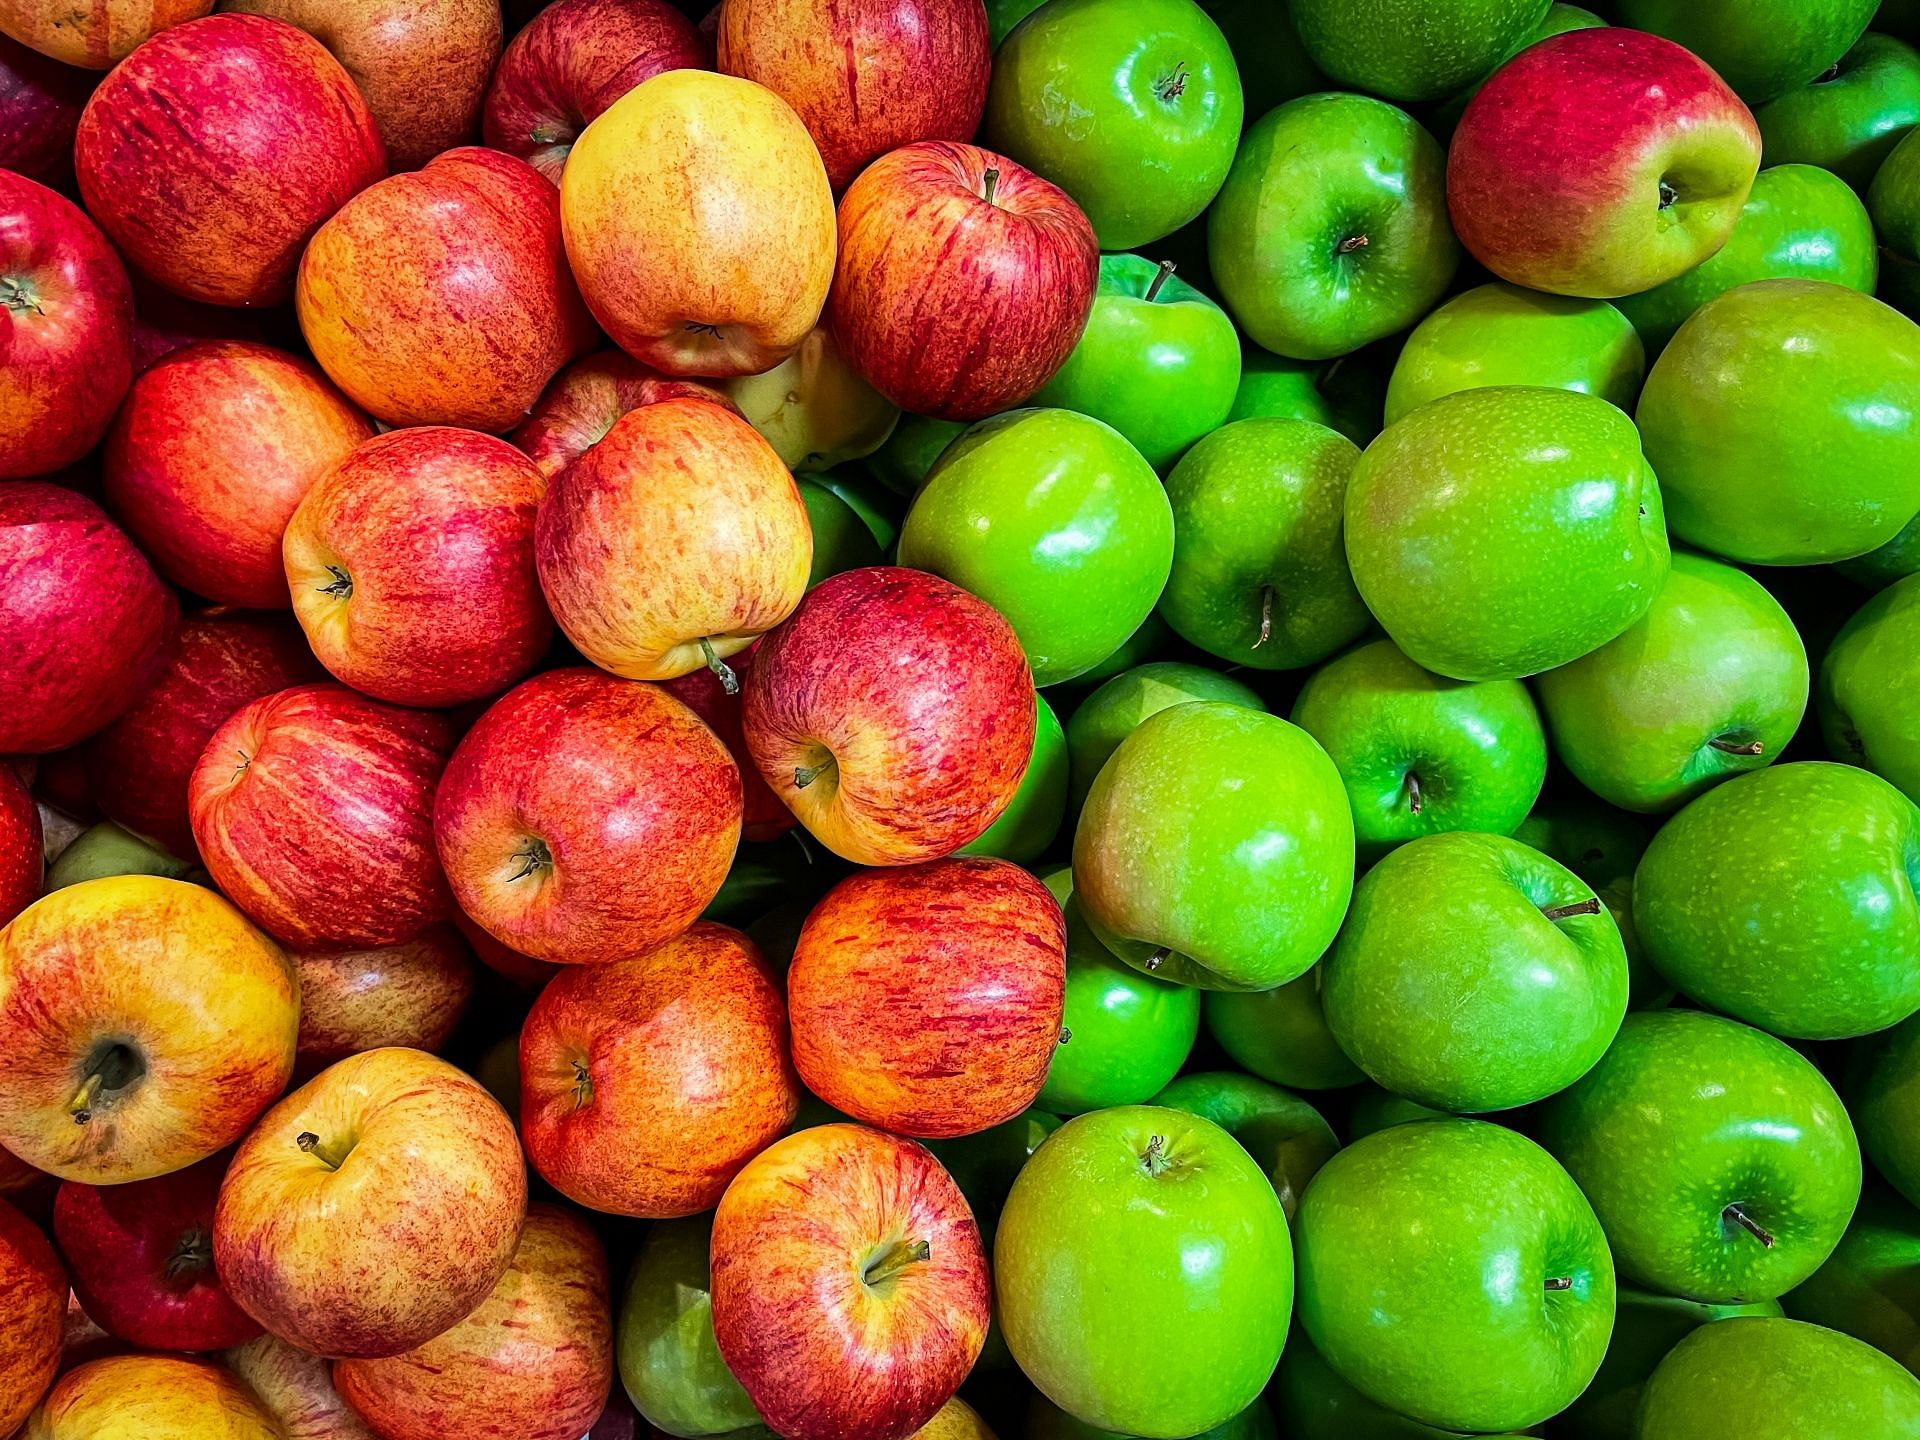 There are more than 2500 apple varieties. (Image via Unsplash/James Yarema)